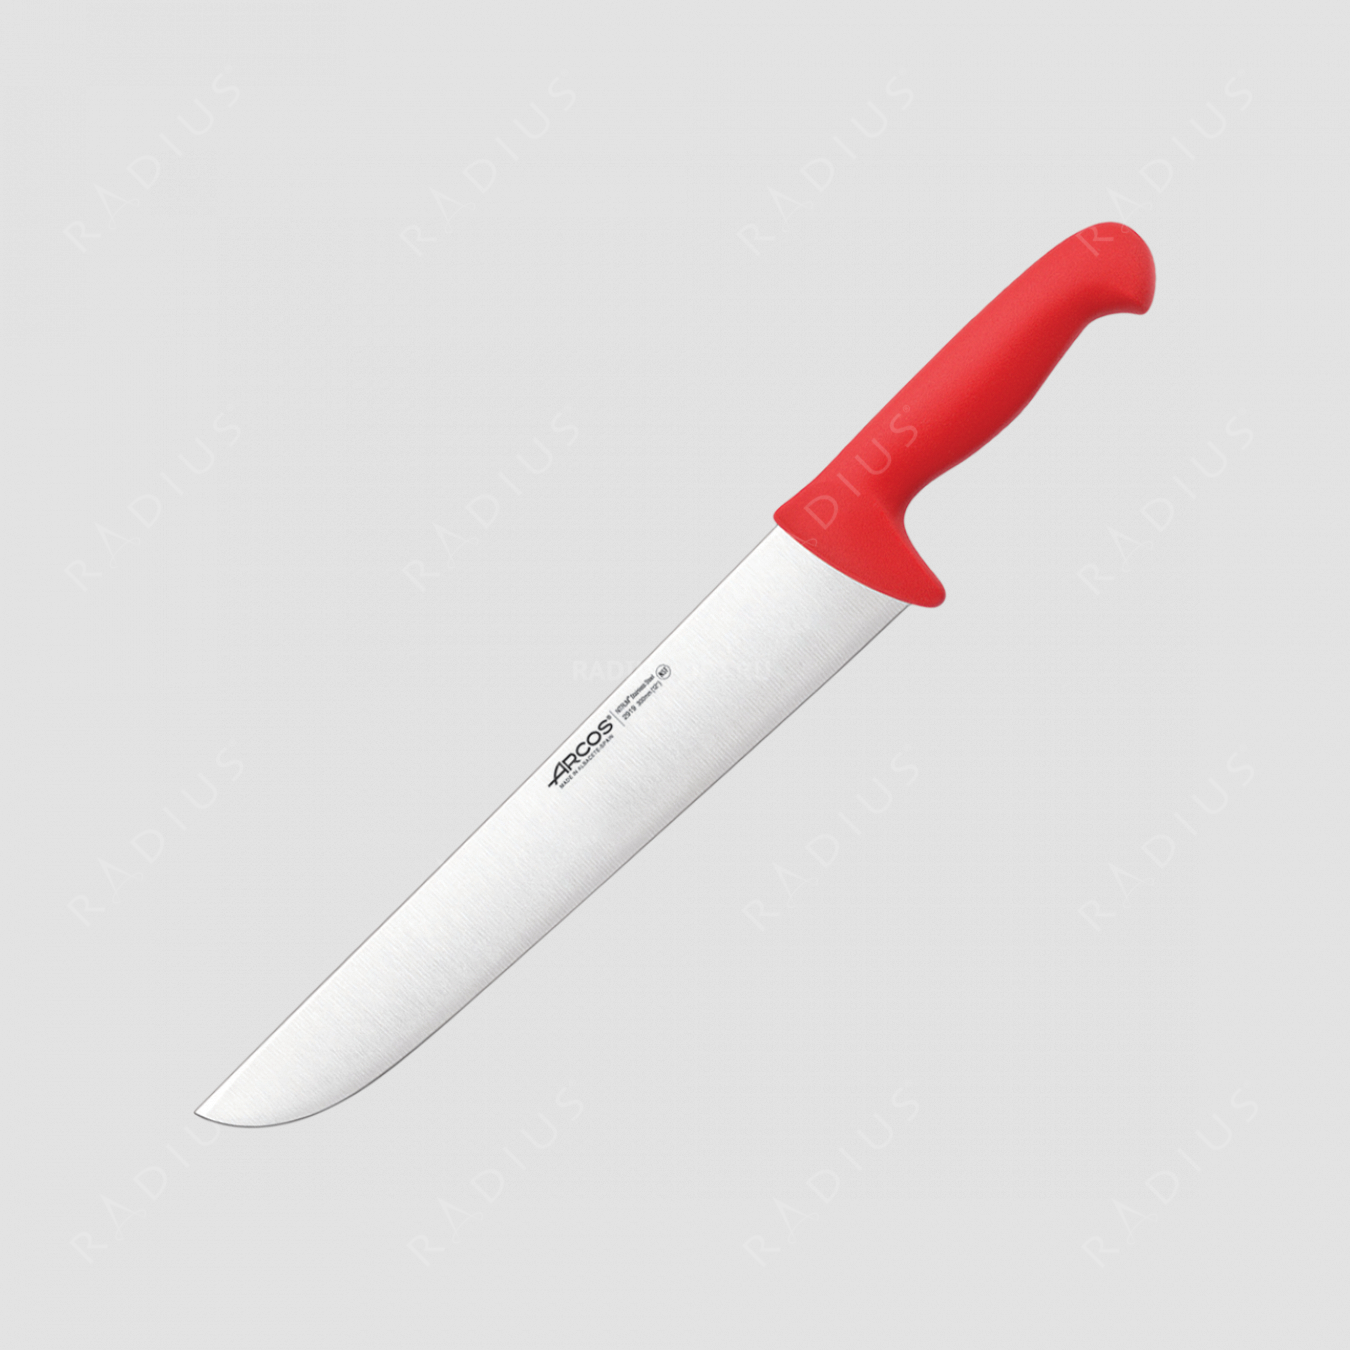 Нож кухонный для разделки 30 см, рукоять - красная, серия 2900, ARCOS, Испания